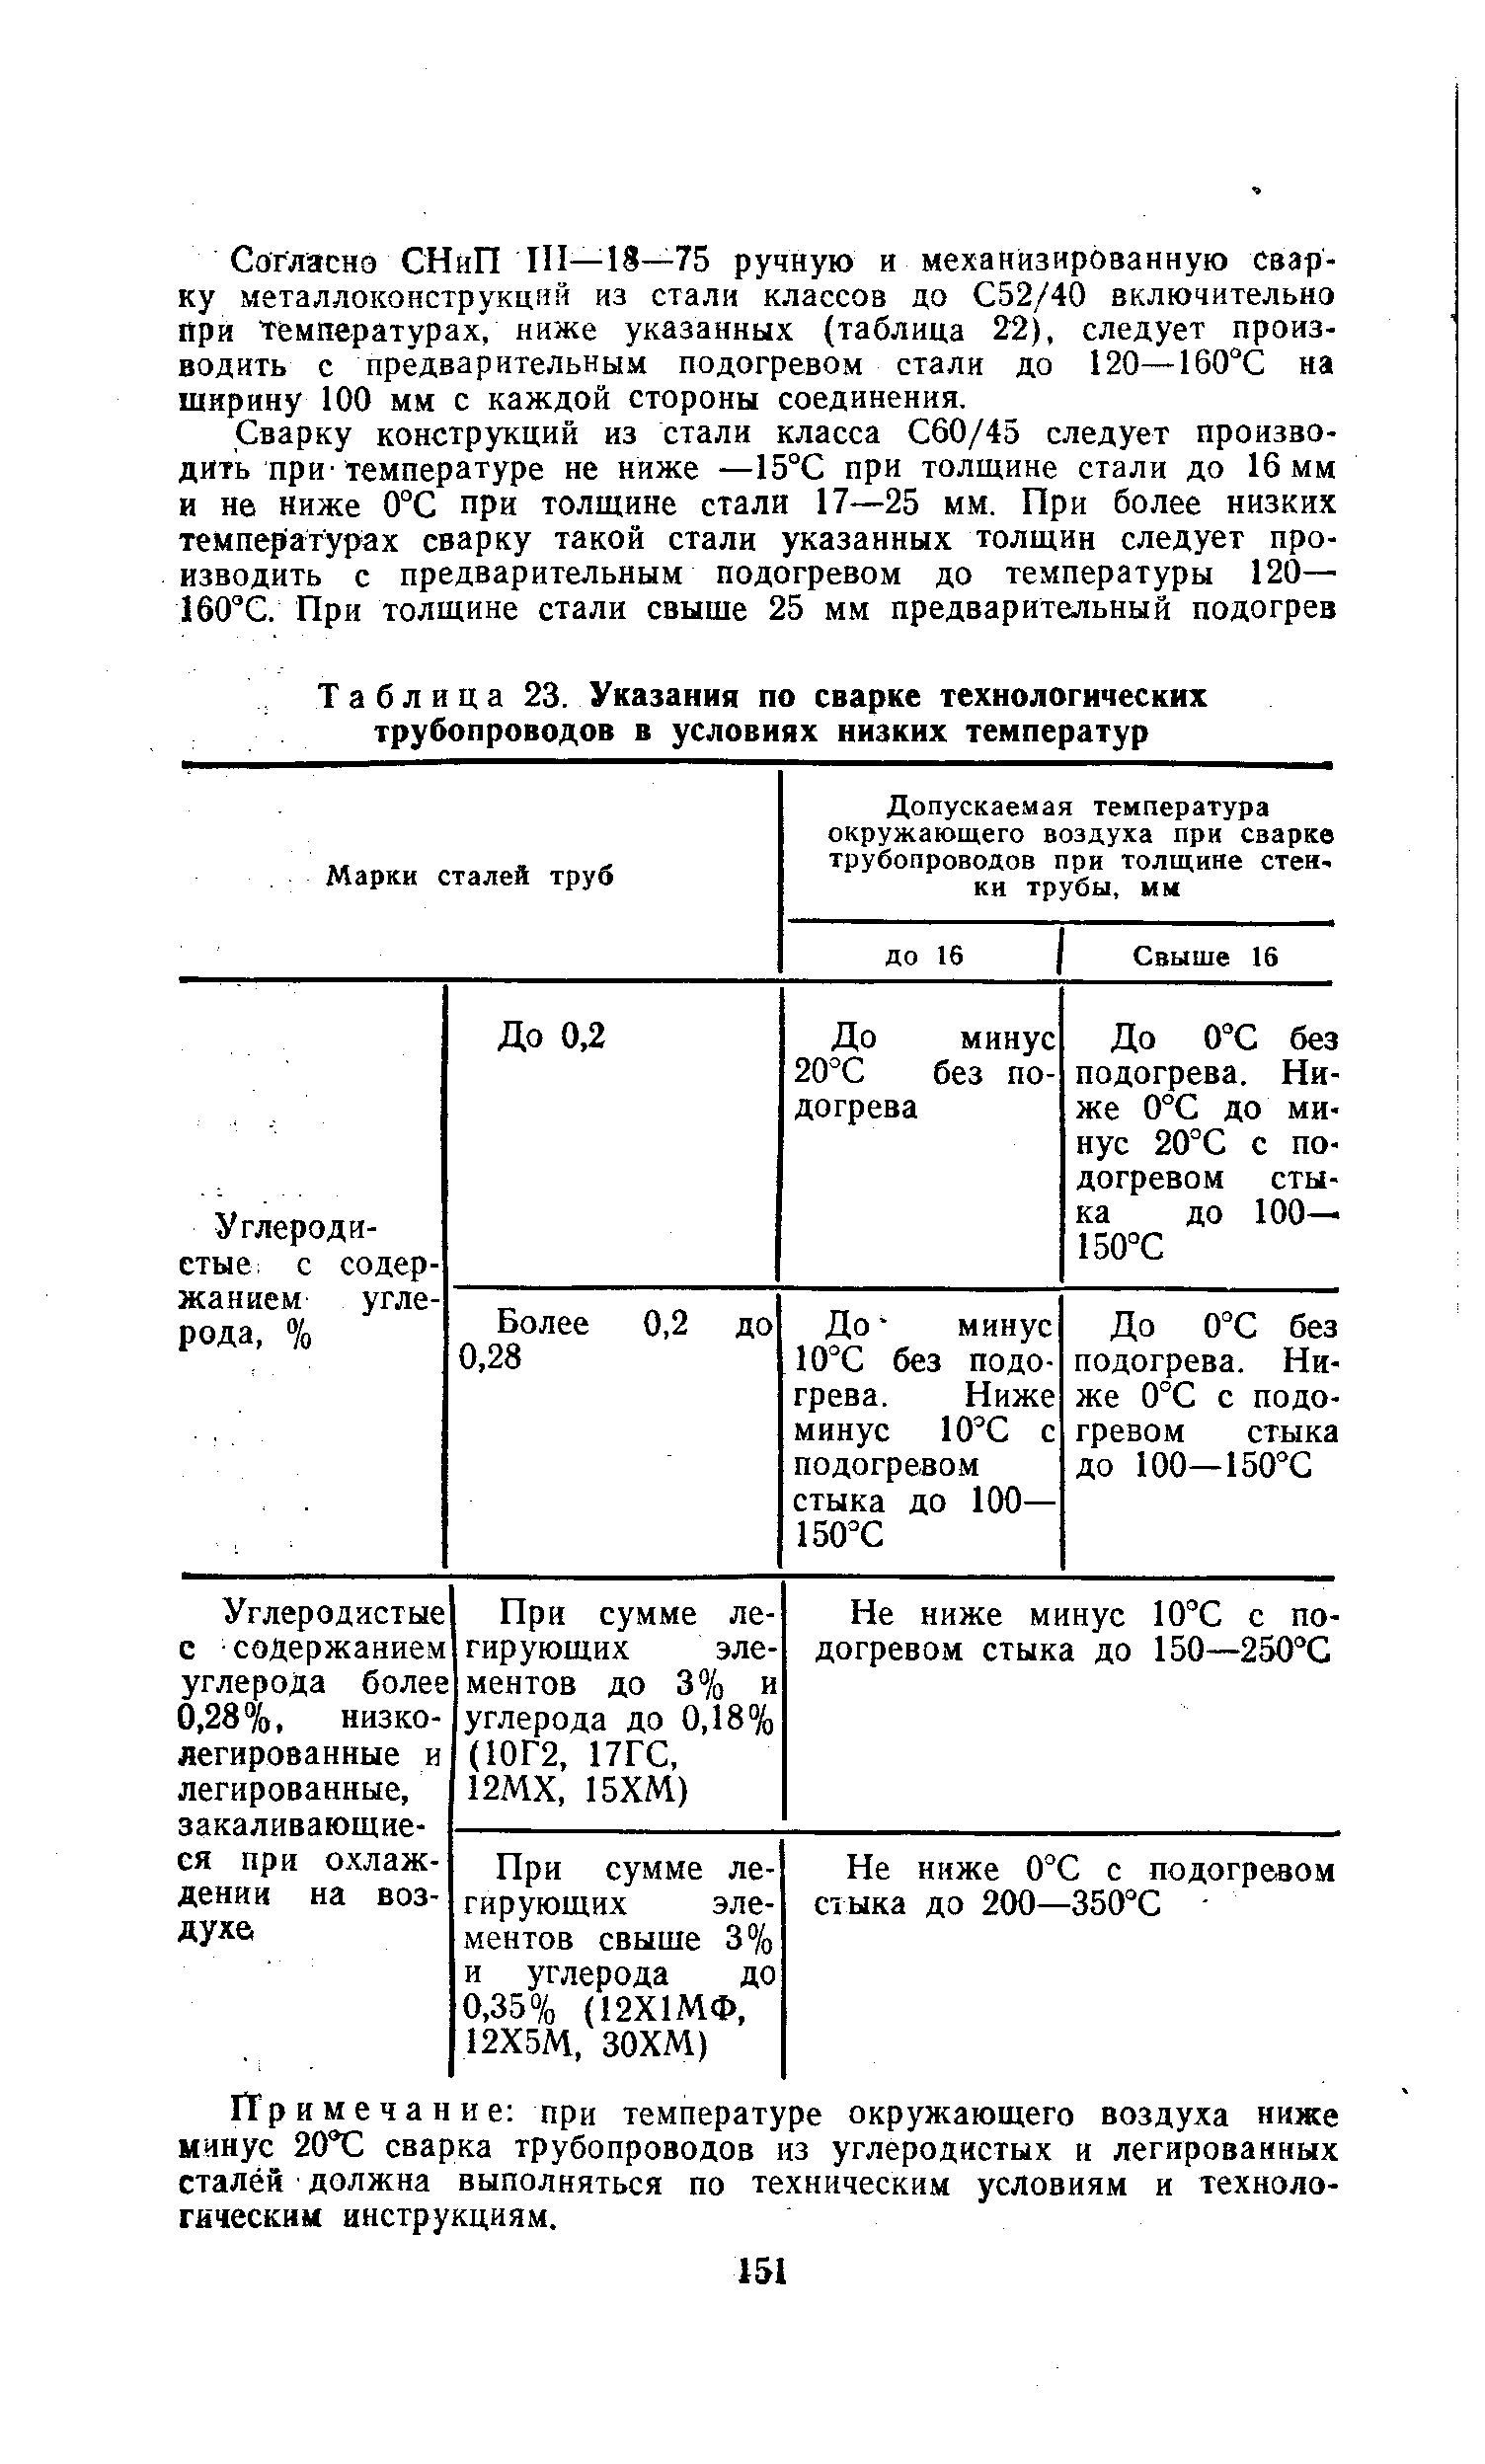 Таблица 23. Указания по сварке технологических трубопроводов в условиях низких температур
